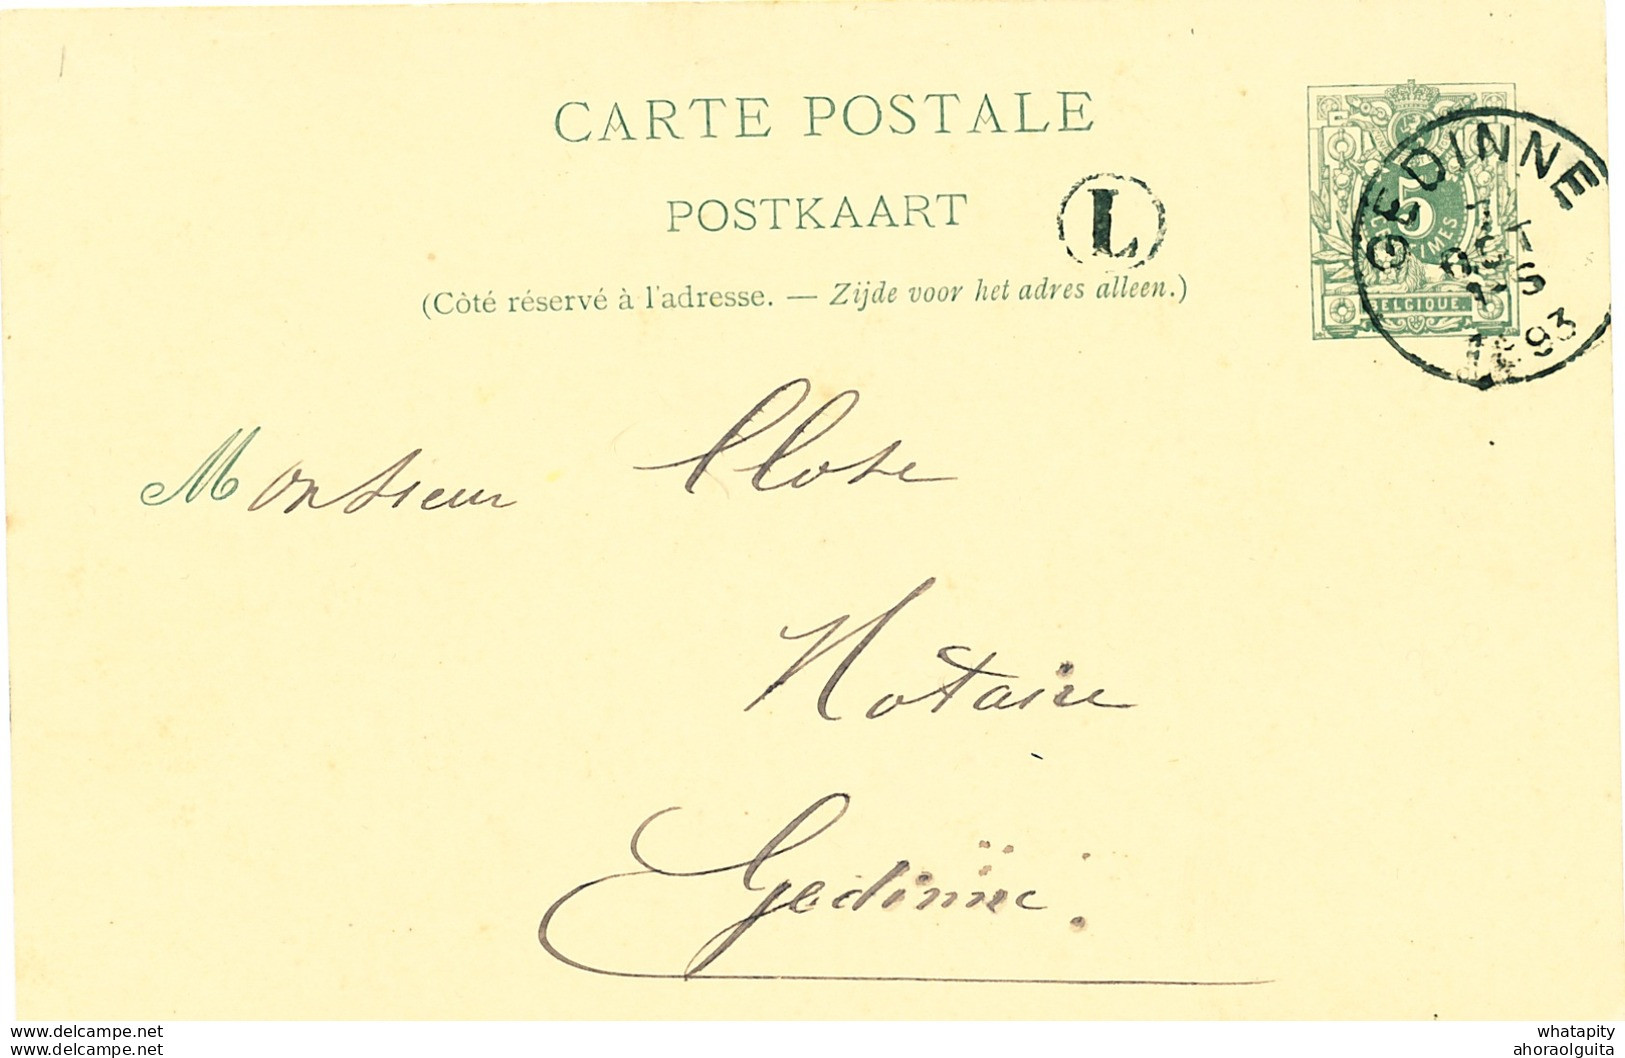 100/26 - Entier Postal Lion Couché GEDINNE 1893 - Boite Rurale L ( Porignon BOURSEIGNE-NEUVE ) - Poste Rurale